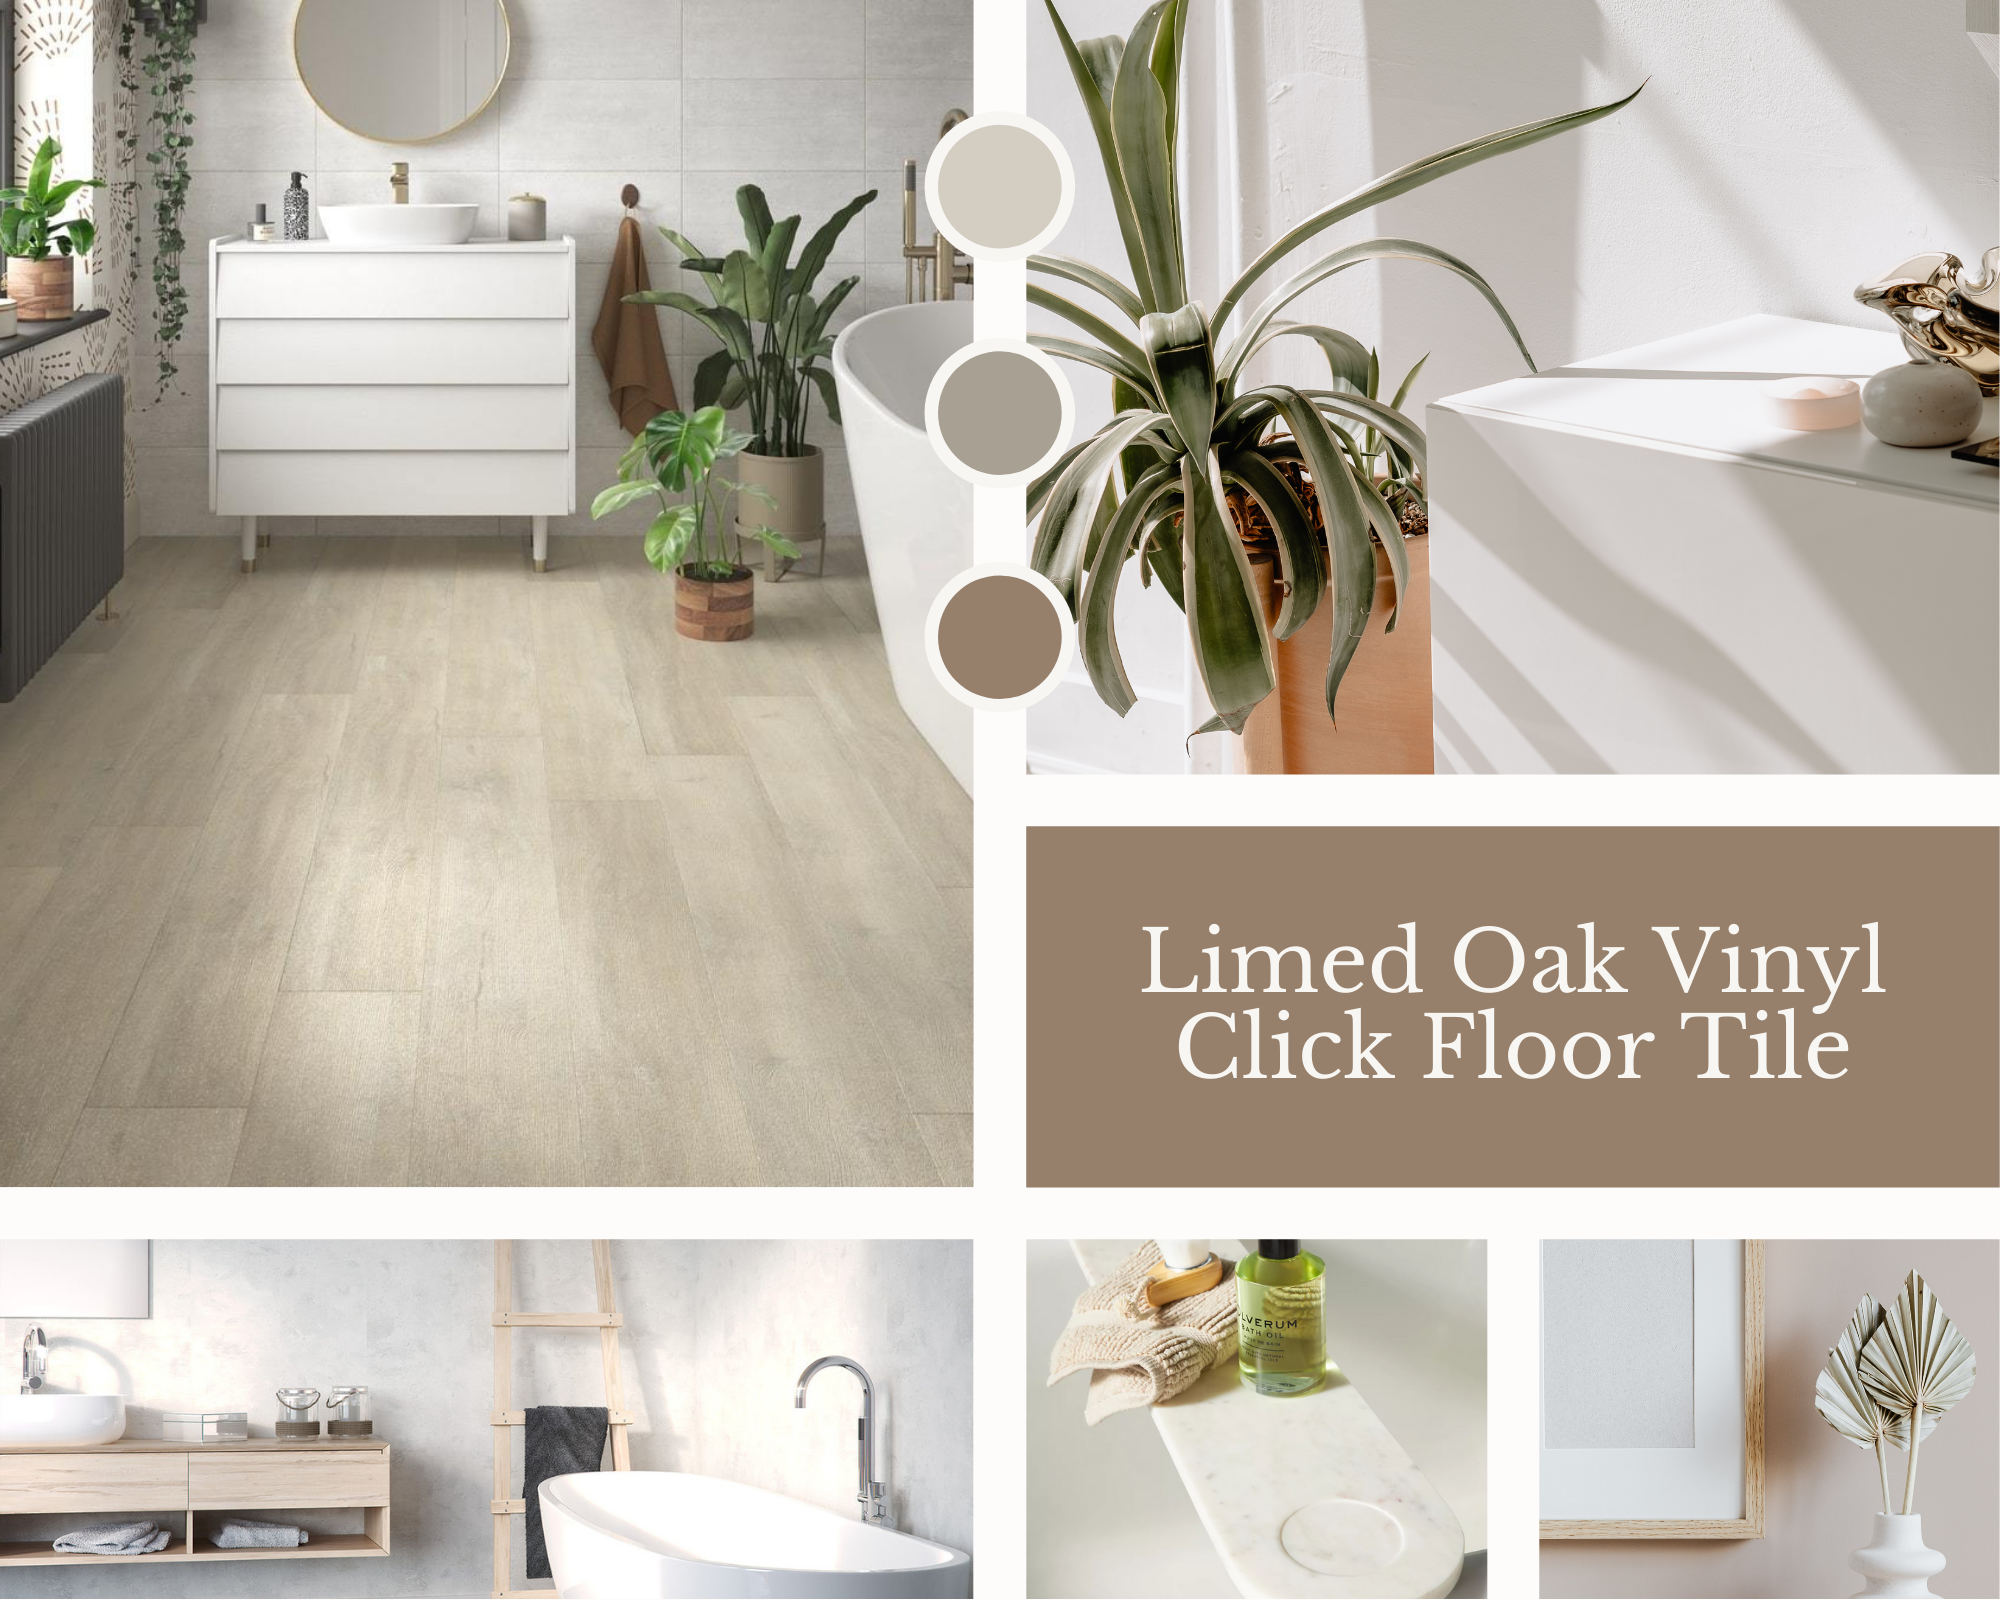 Limed Oak Vinyl Click Floor Tile